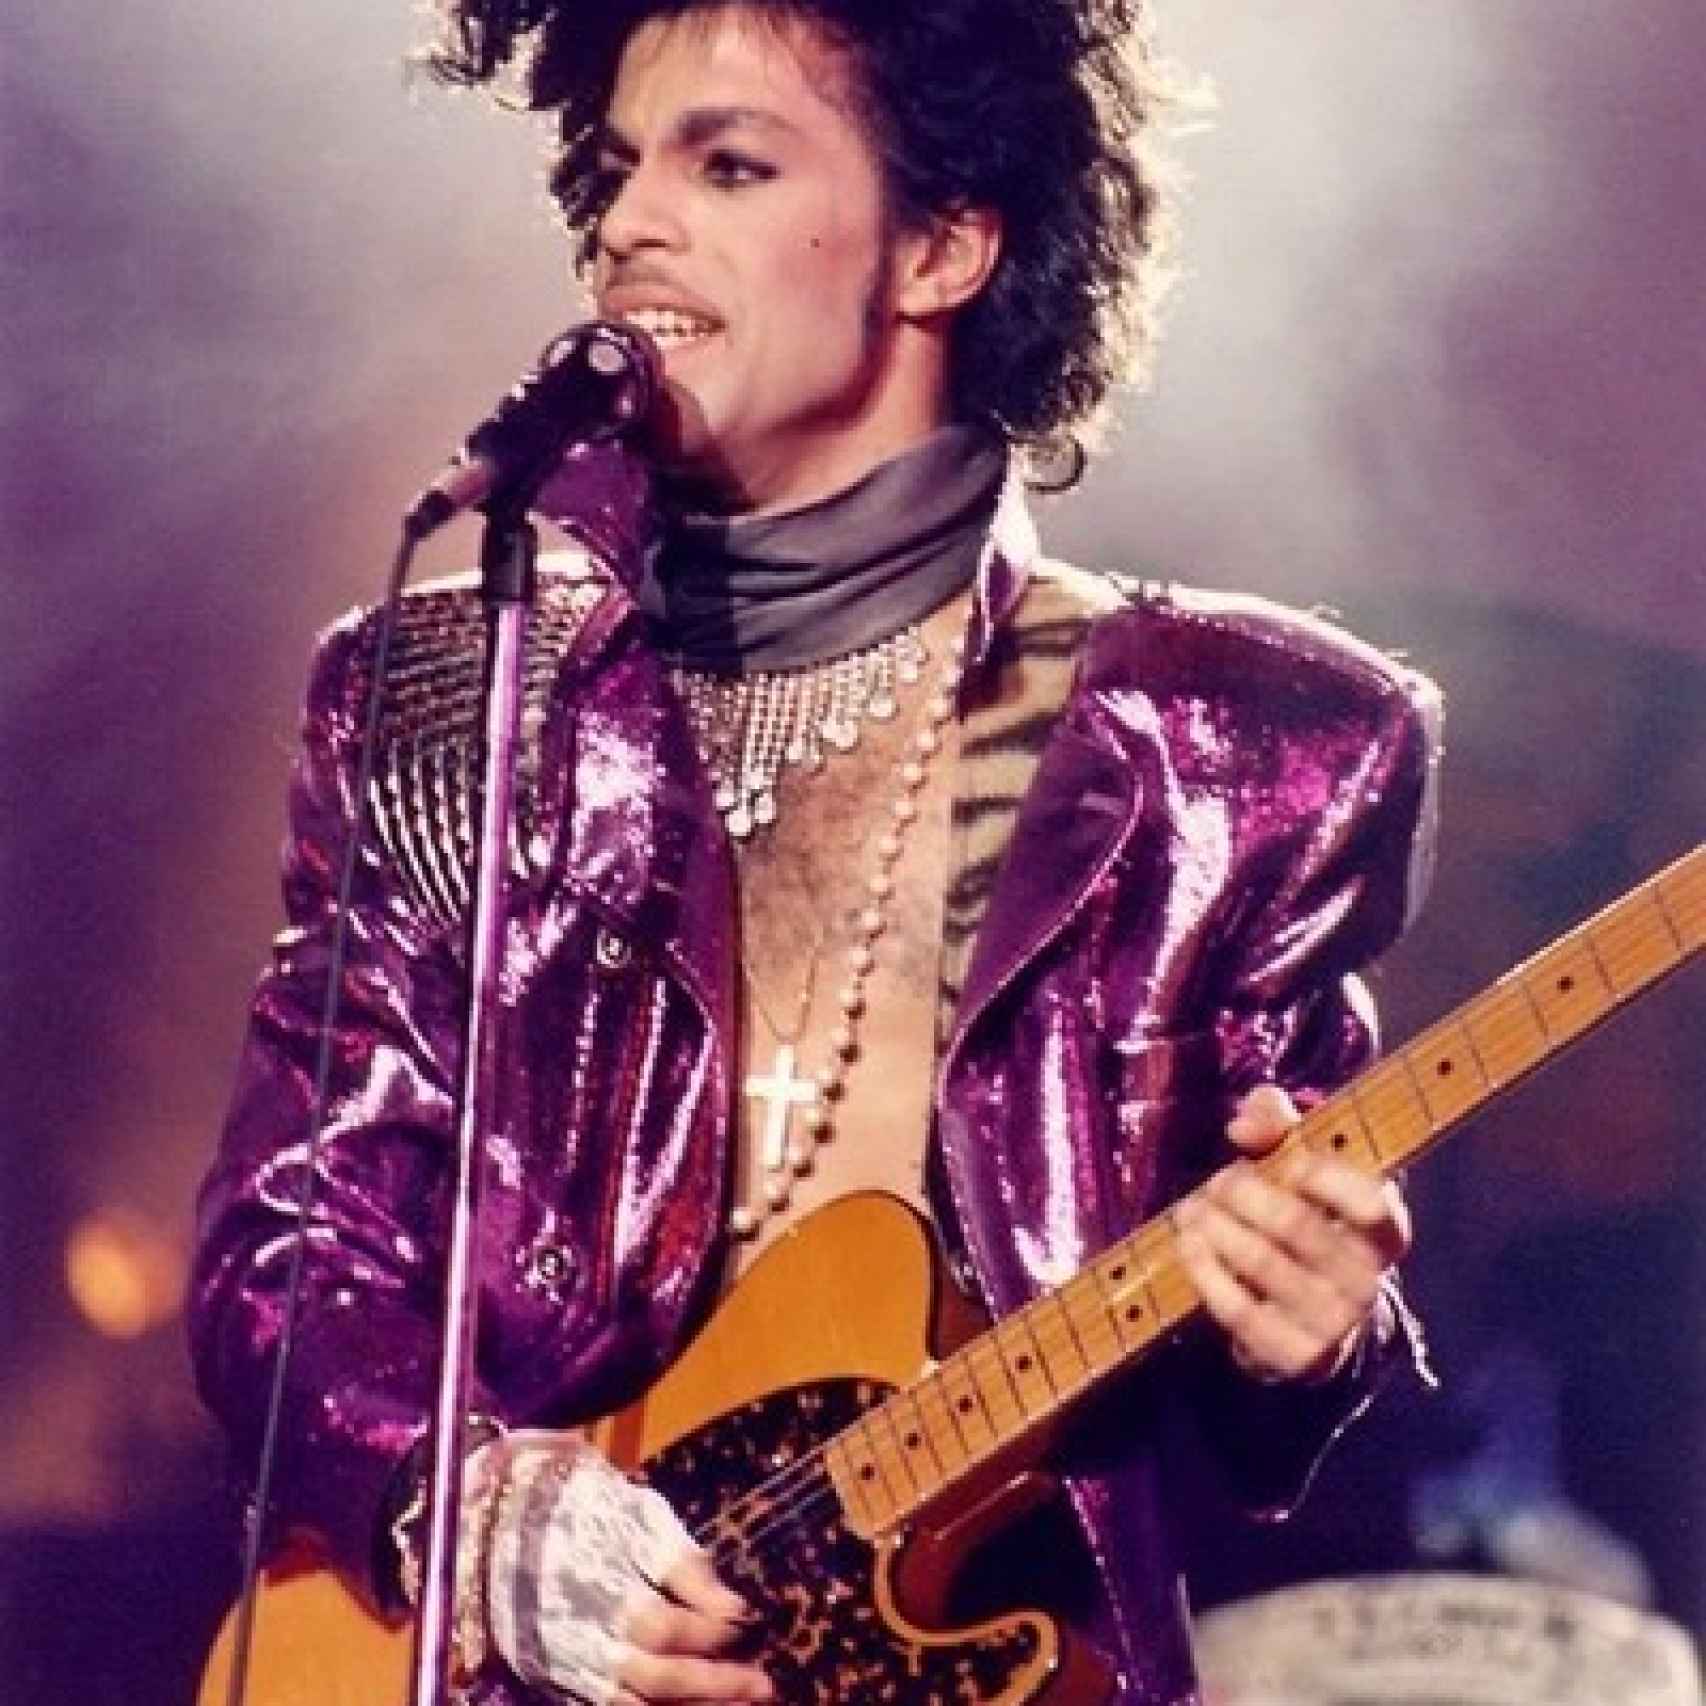 Prince vestido de morado interpretando Purple Rain